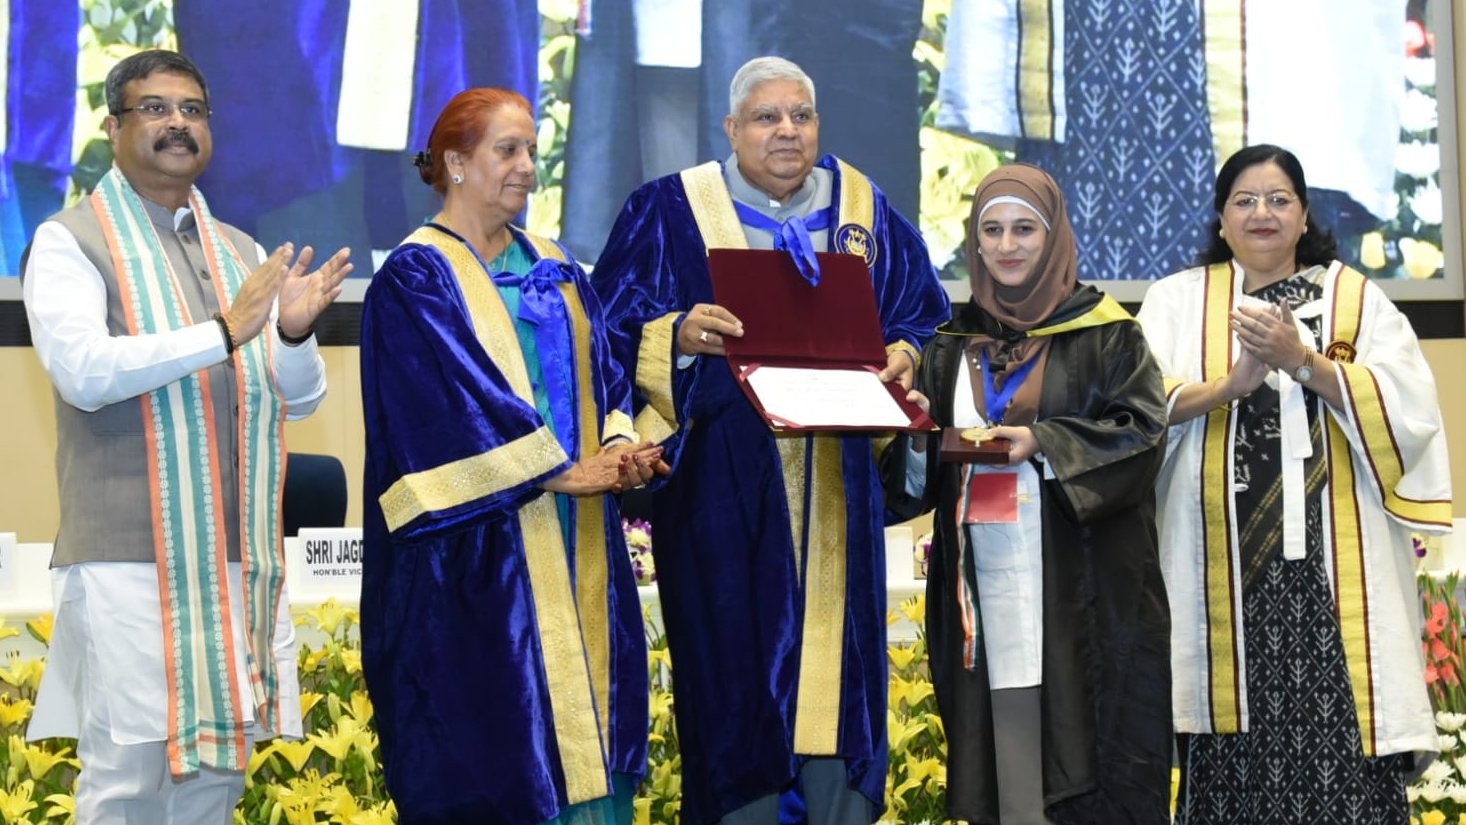 23 जुलाई 2023 को विज्ञान भवन, नई दिल्ली में जामिया मिलिया इस्लामिया विश्वविद्यालय के शताब्दी वर्ष दीक्षांत समारोह के दौरान मेधावी विद्यार्थियों को स्वर्ण पदक से सम्मानित करते हुए उपराष्ट्रपति श्री जगदीप धनखड़ । 